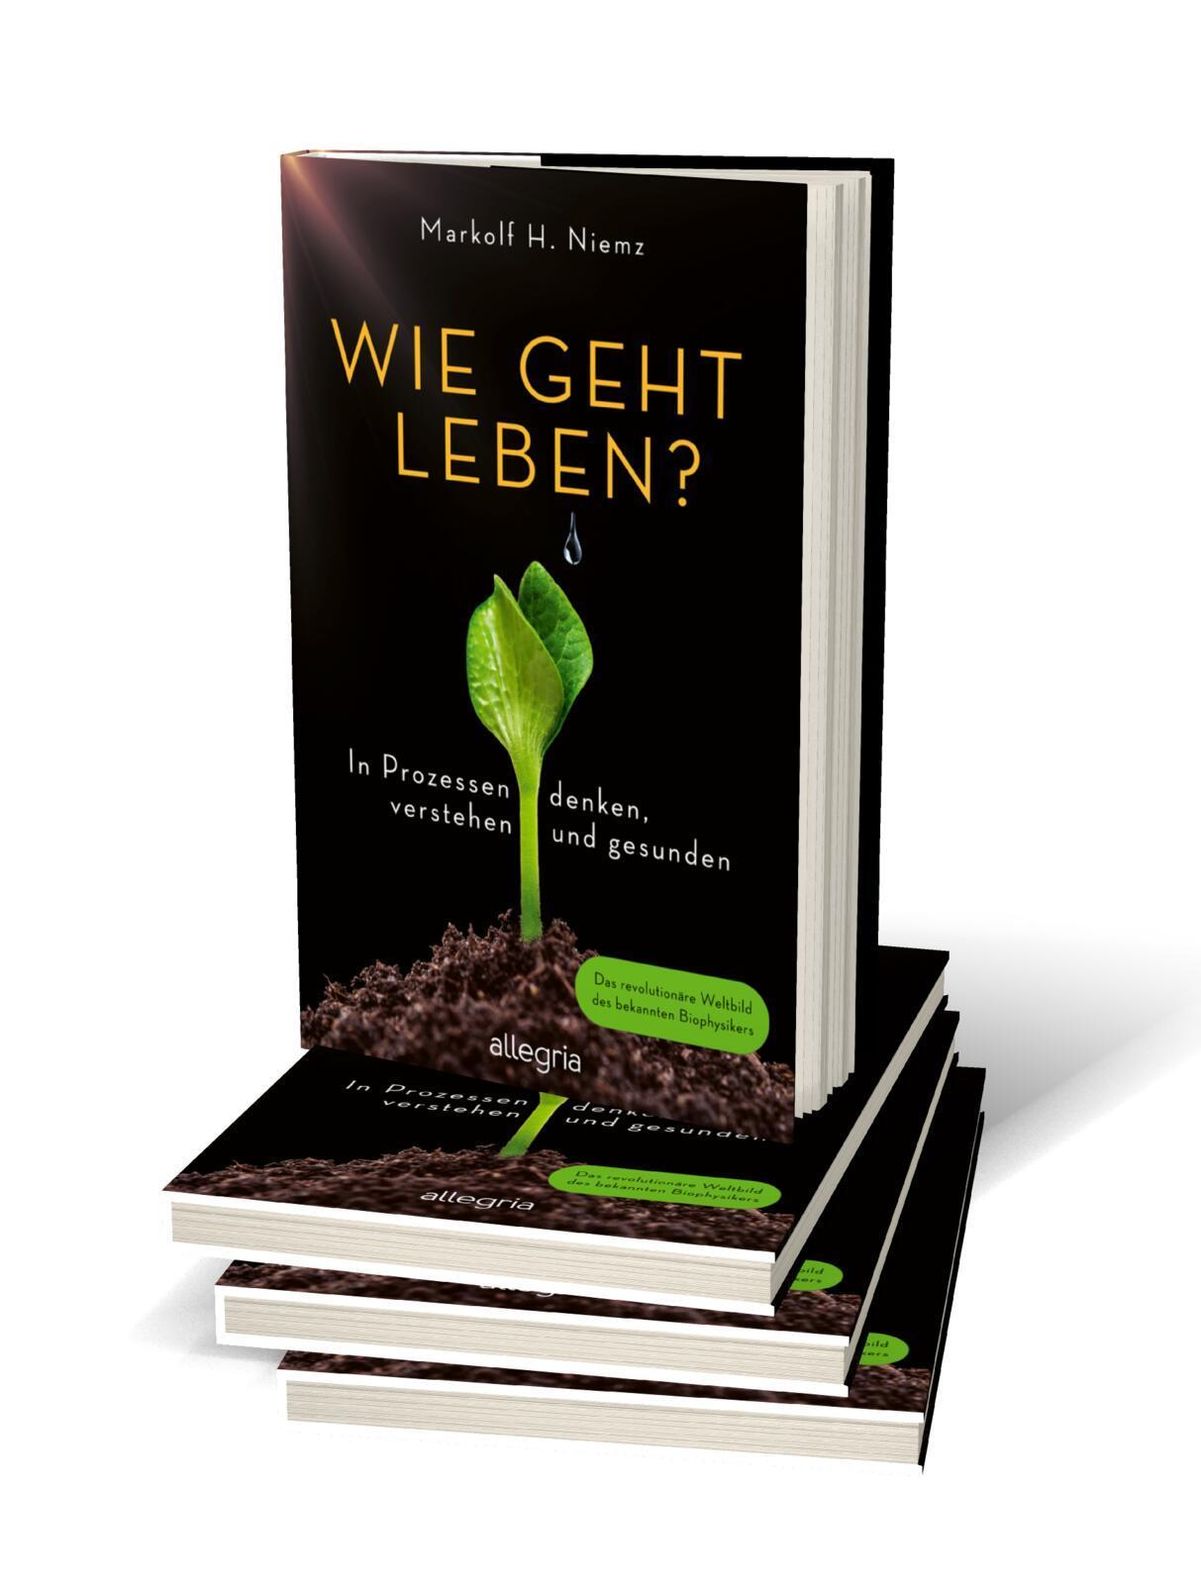 Wie geht leben? Buch von Markolf H. Niemz versandkostenfrei - Weltbild.ch